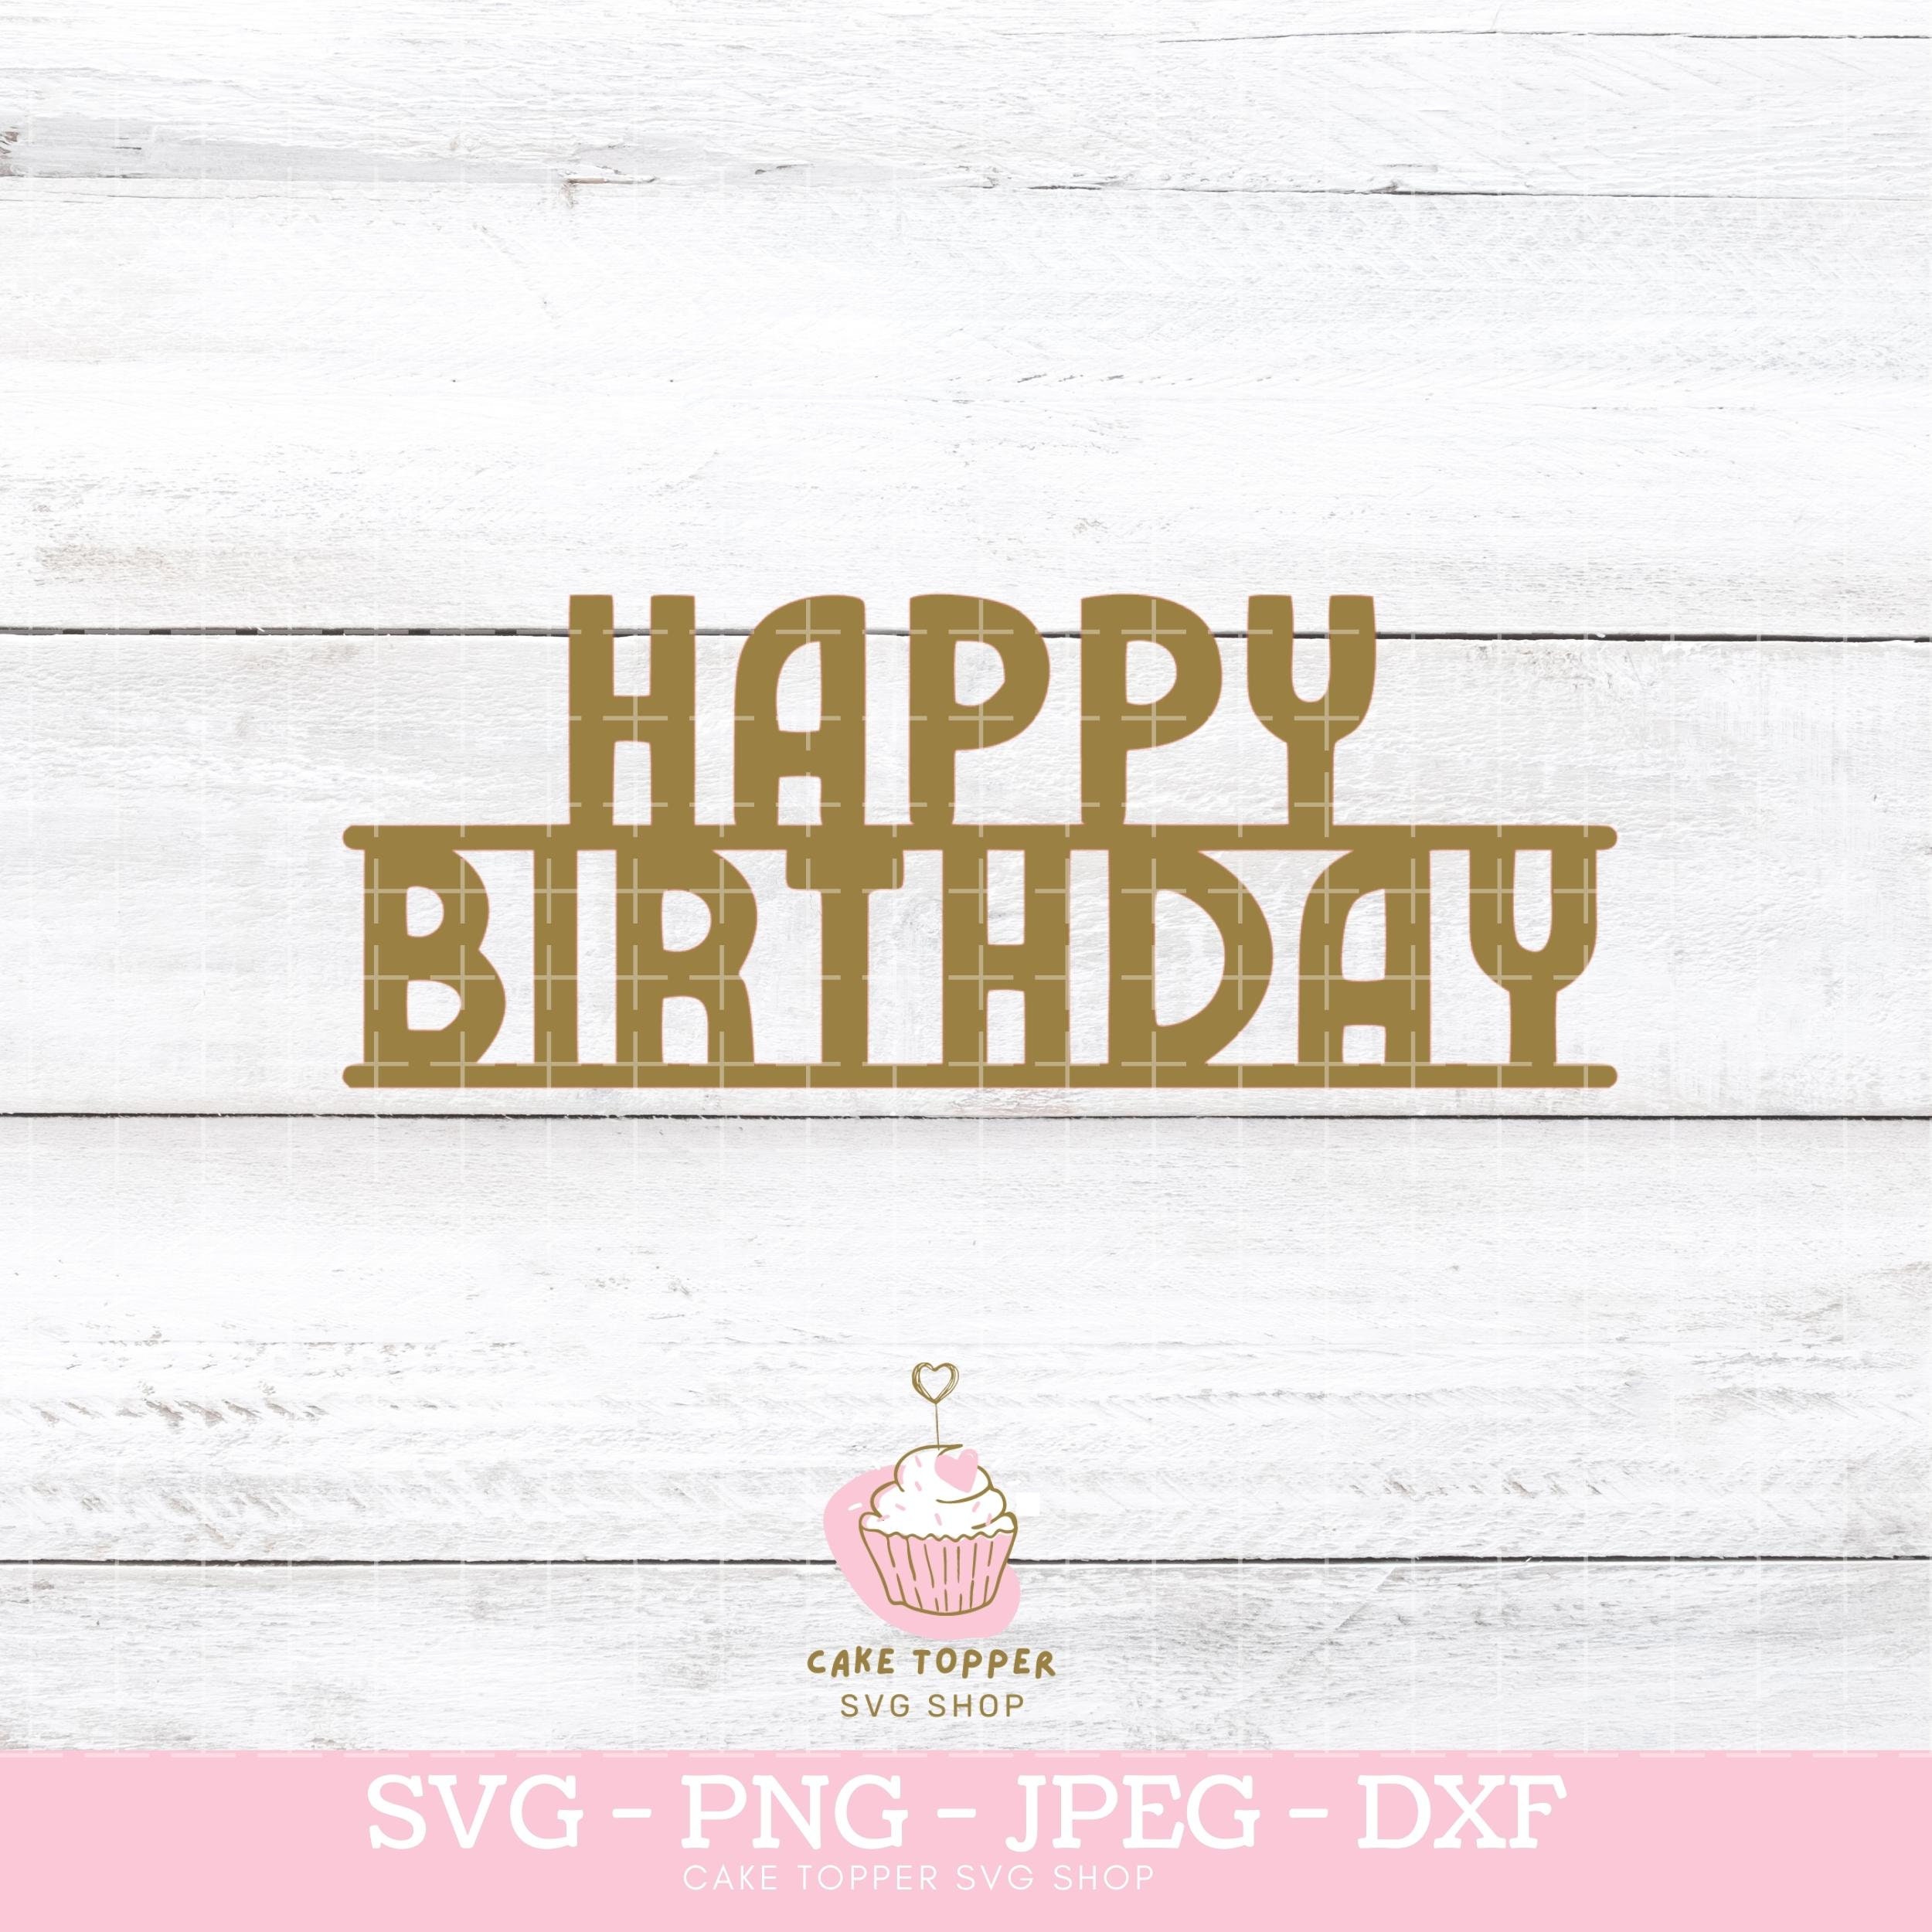 Happy Birthday SVG Birthday Cake Topper SVG Cut File | Etsy UK